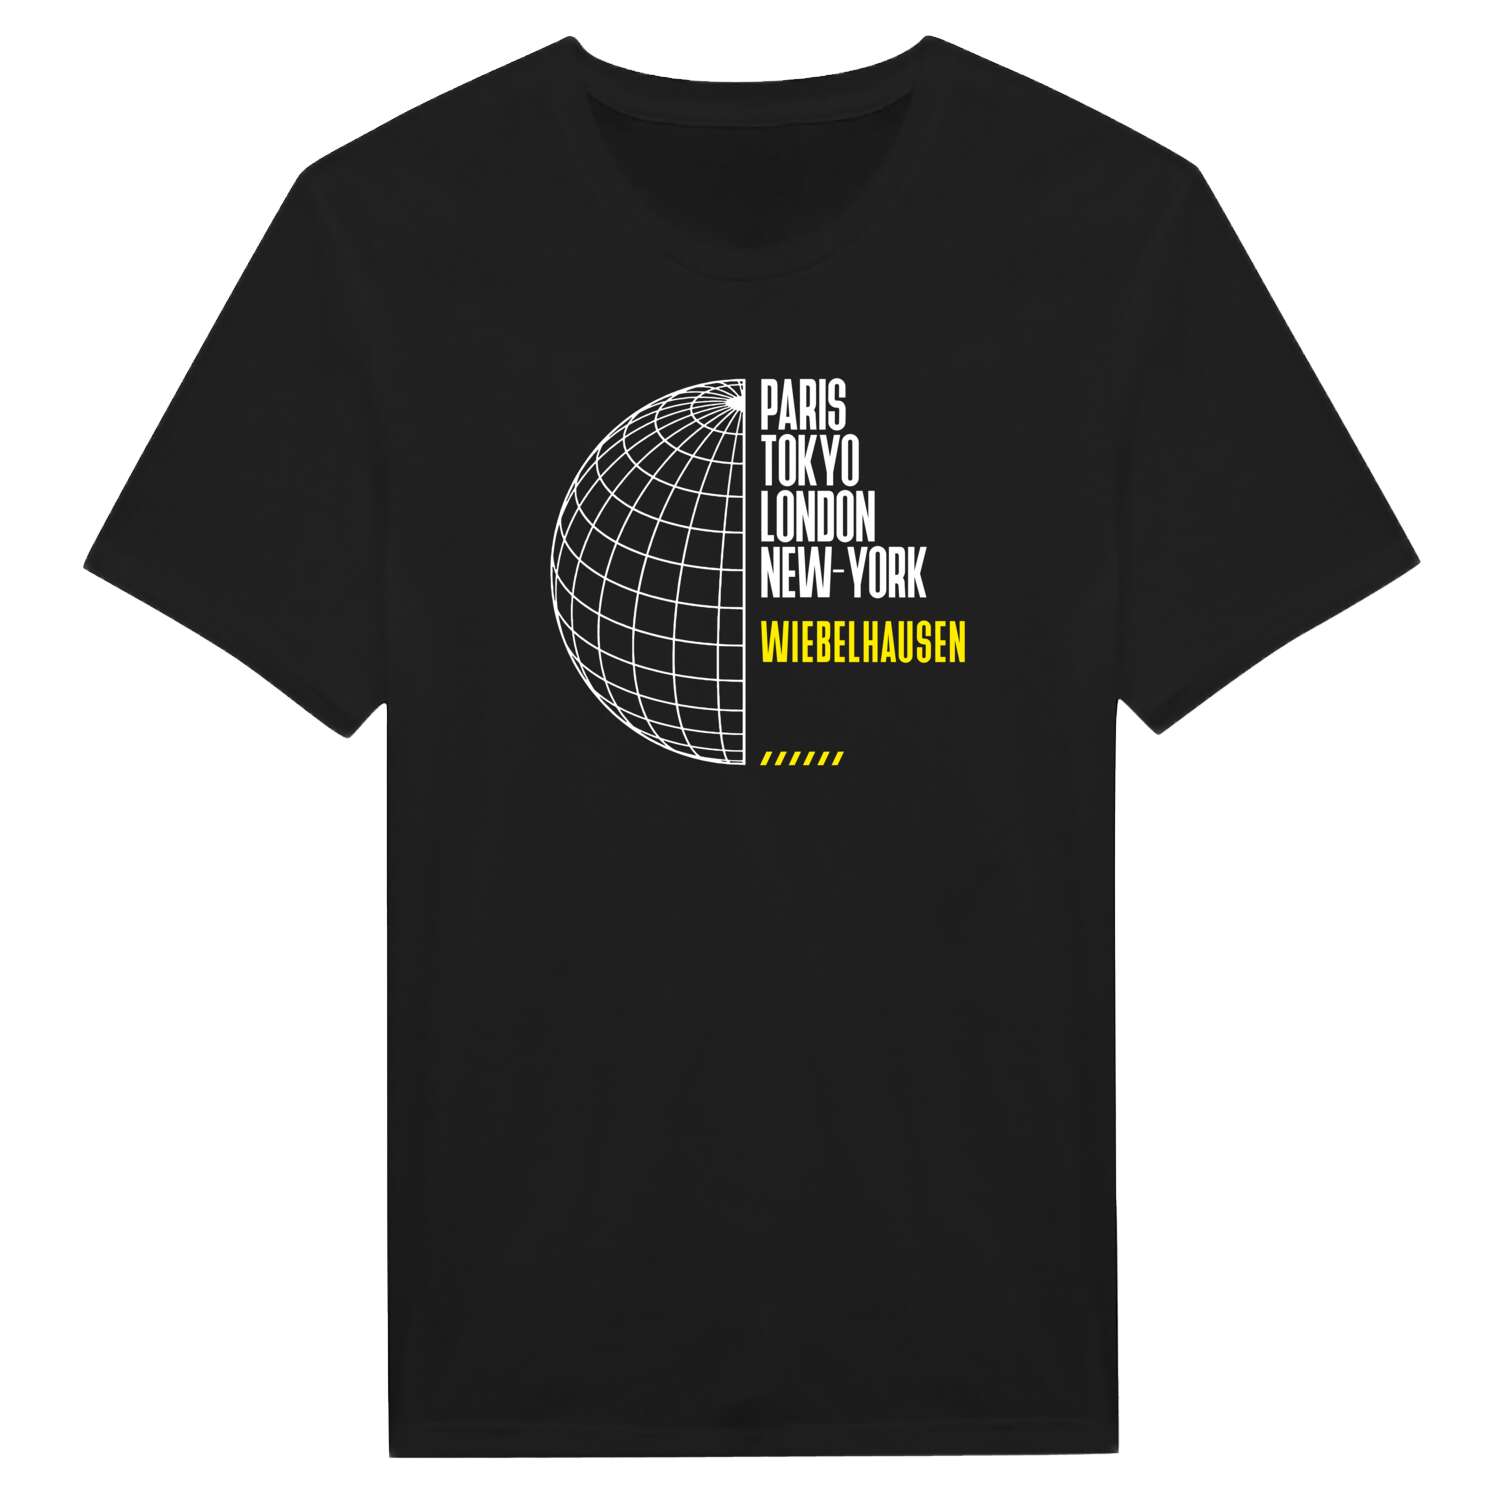 Wiebelhausen T-Shirt »Paris Tokyo London«